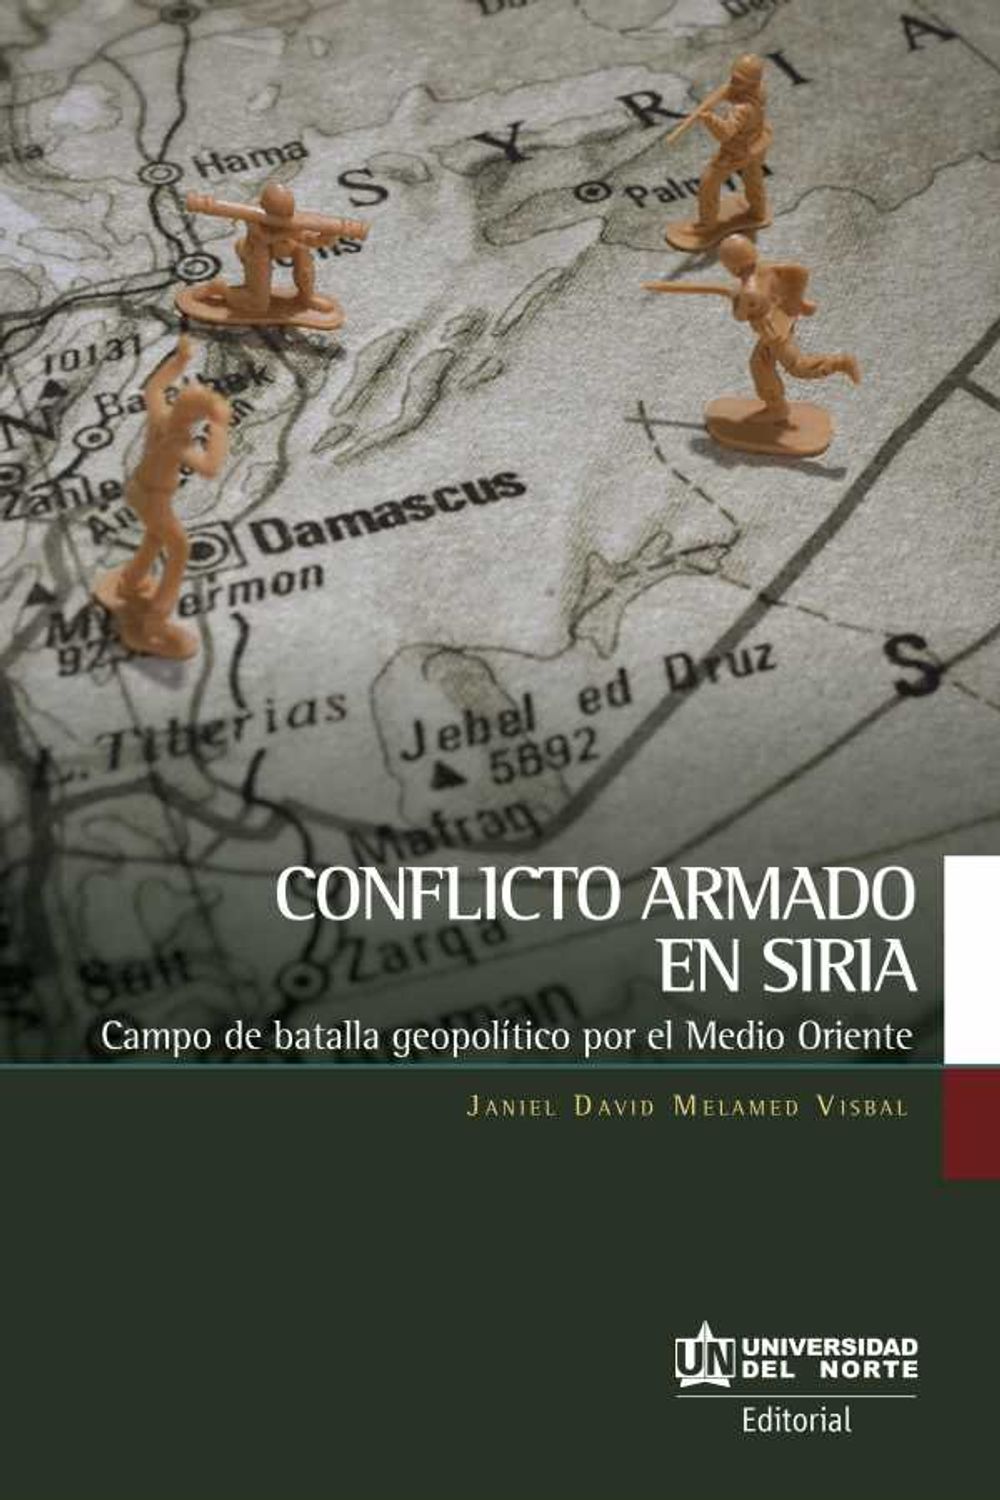 bw-conflicto-armado-en-siria-u-del-norte-editorial-9789587892659